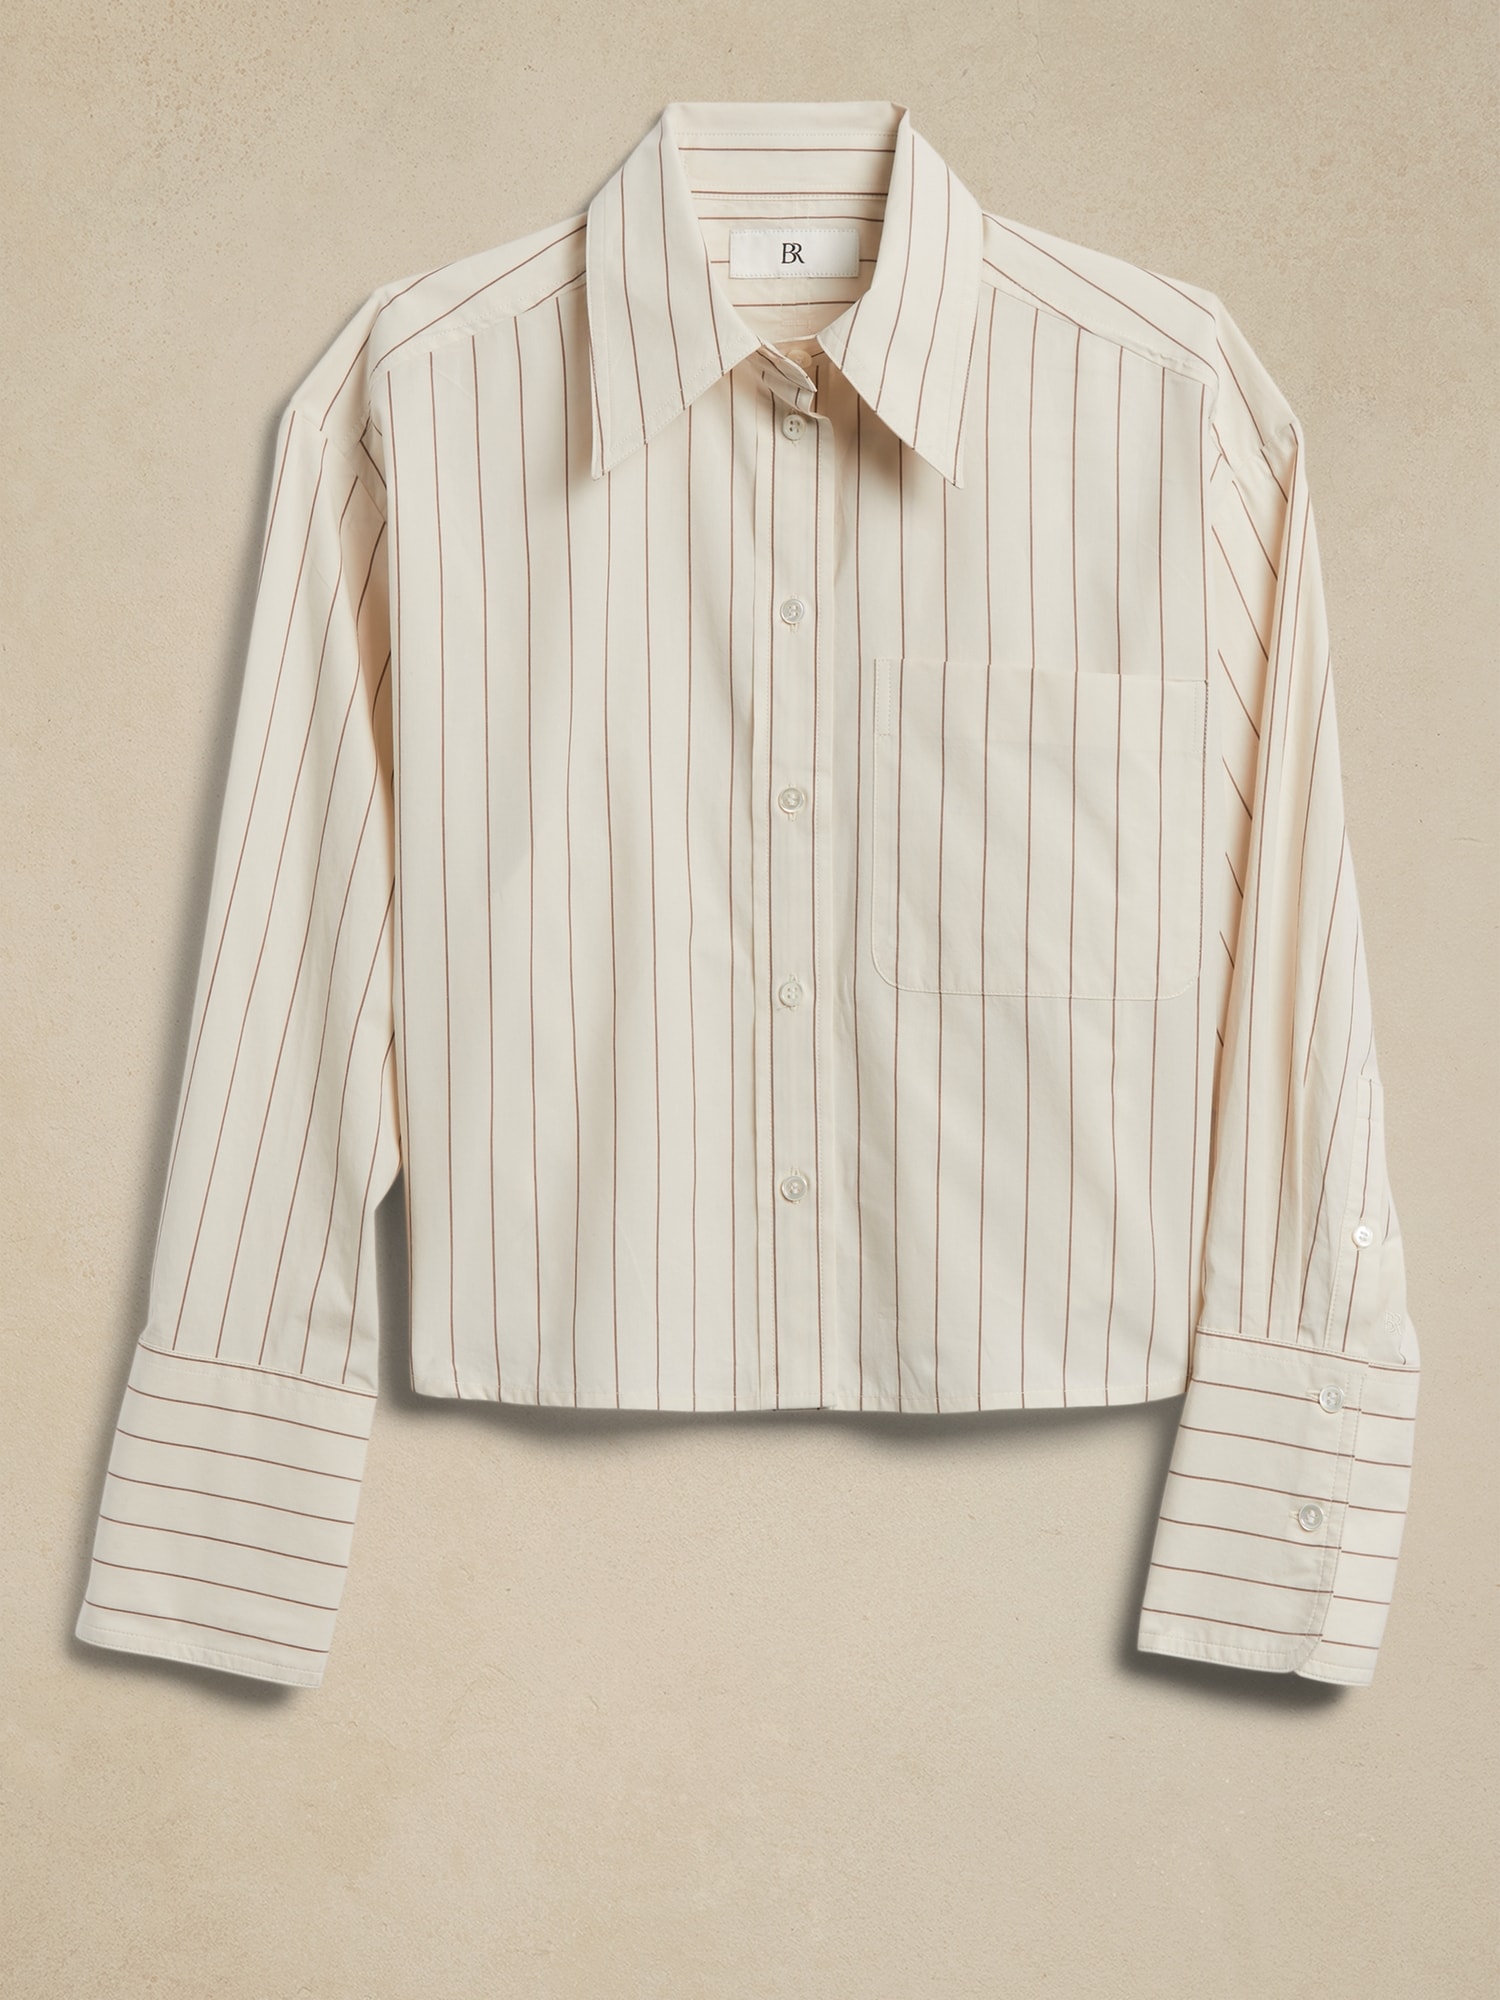 Women's Cropped shirt in striped cotton poplin, CELINE